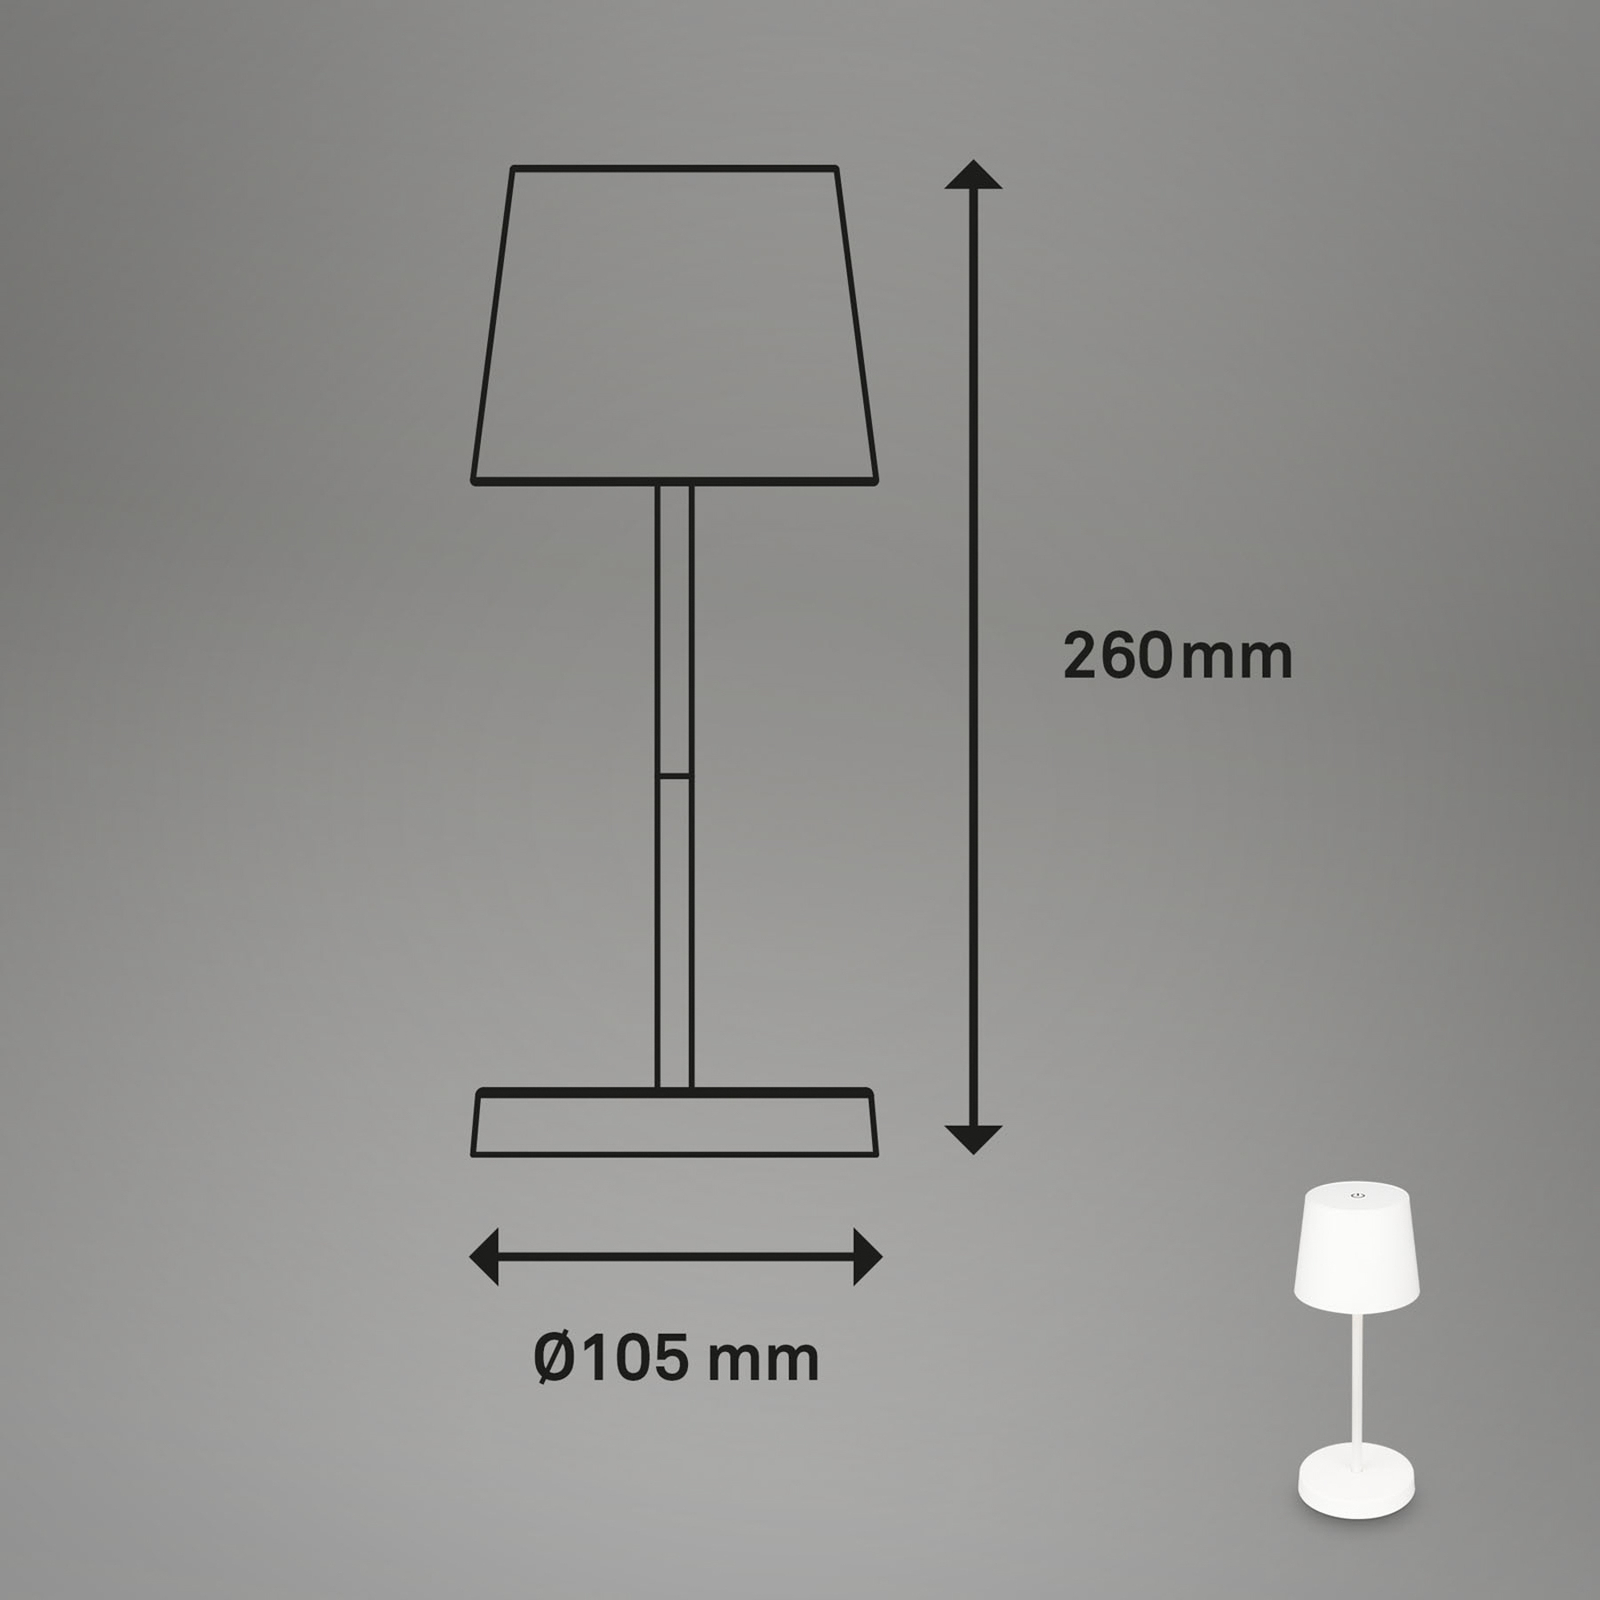 Piha LED asztali lámpa újratölthető akkumulátorral, fehér színben